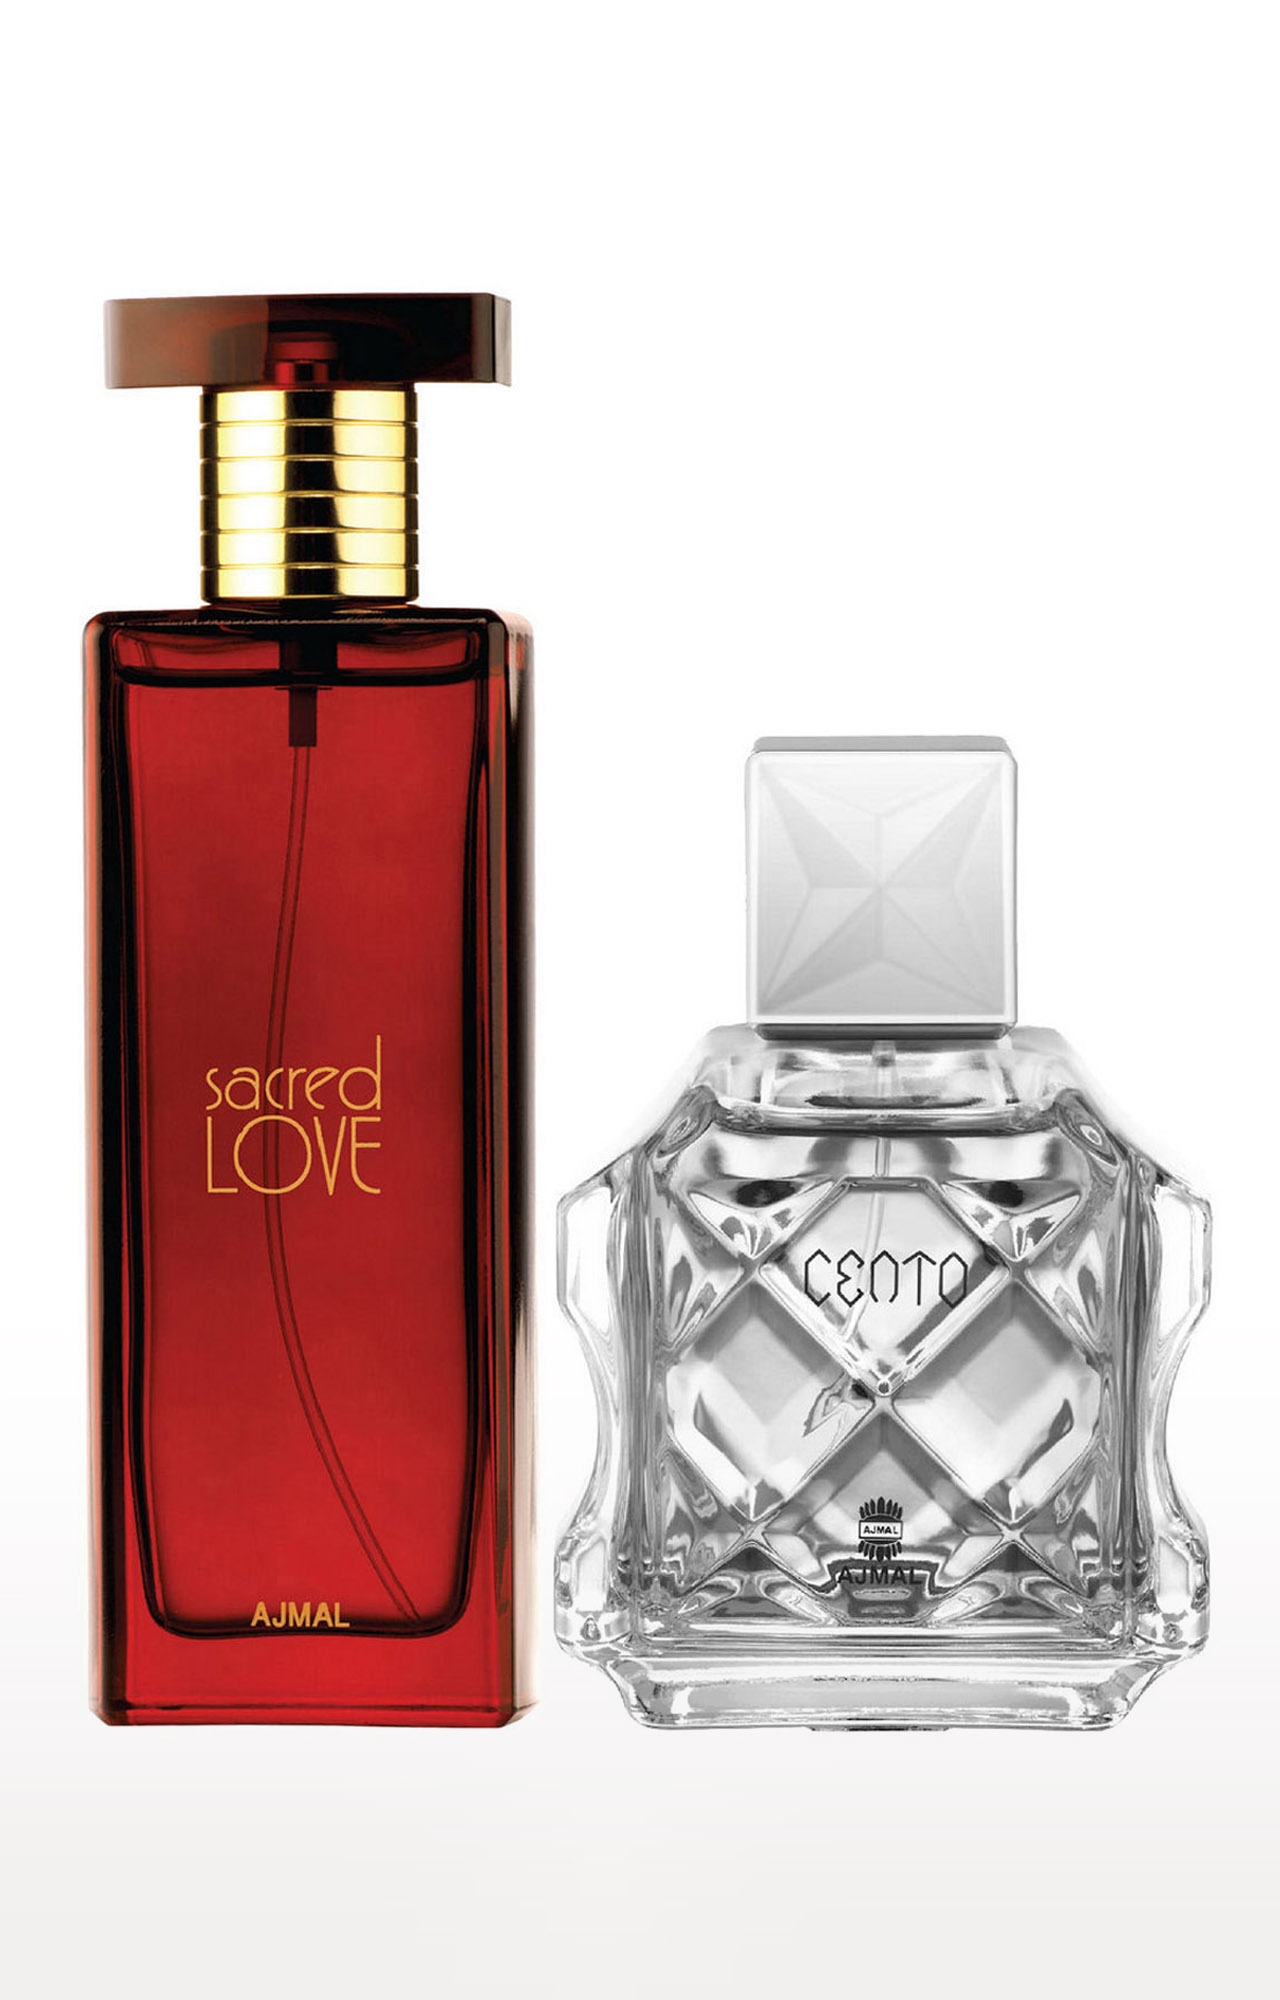 Ajmal Sacred Love EDP Musky Perfume 50ml for Women and Cento EDP Perfume 100ml for Men